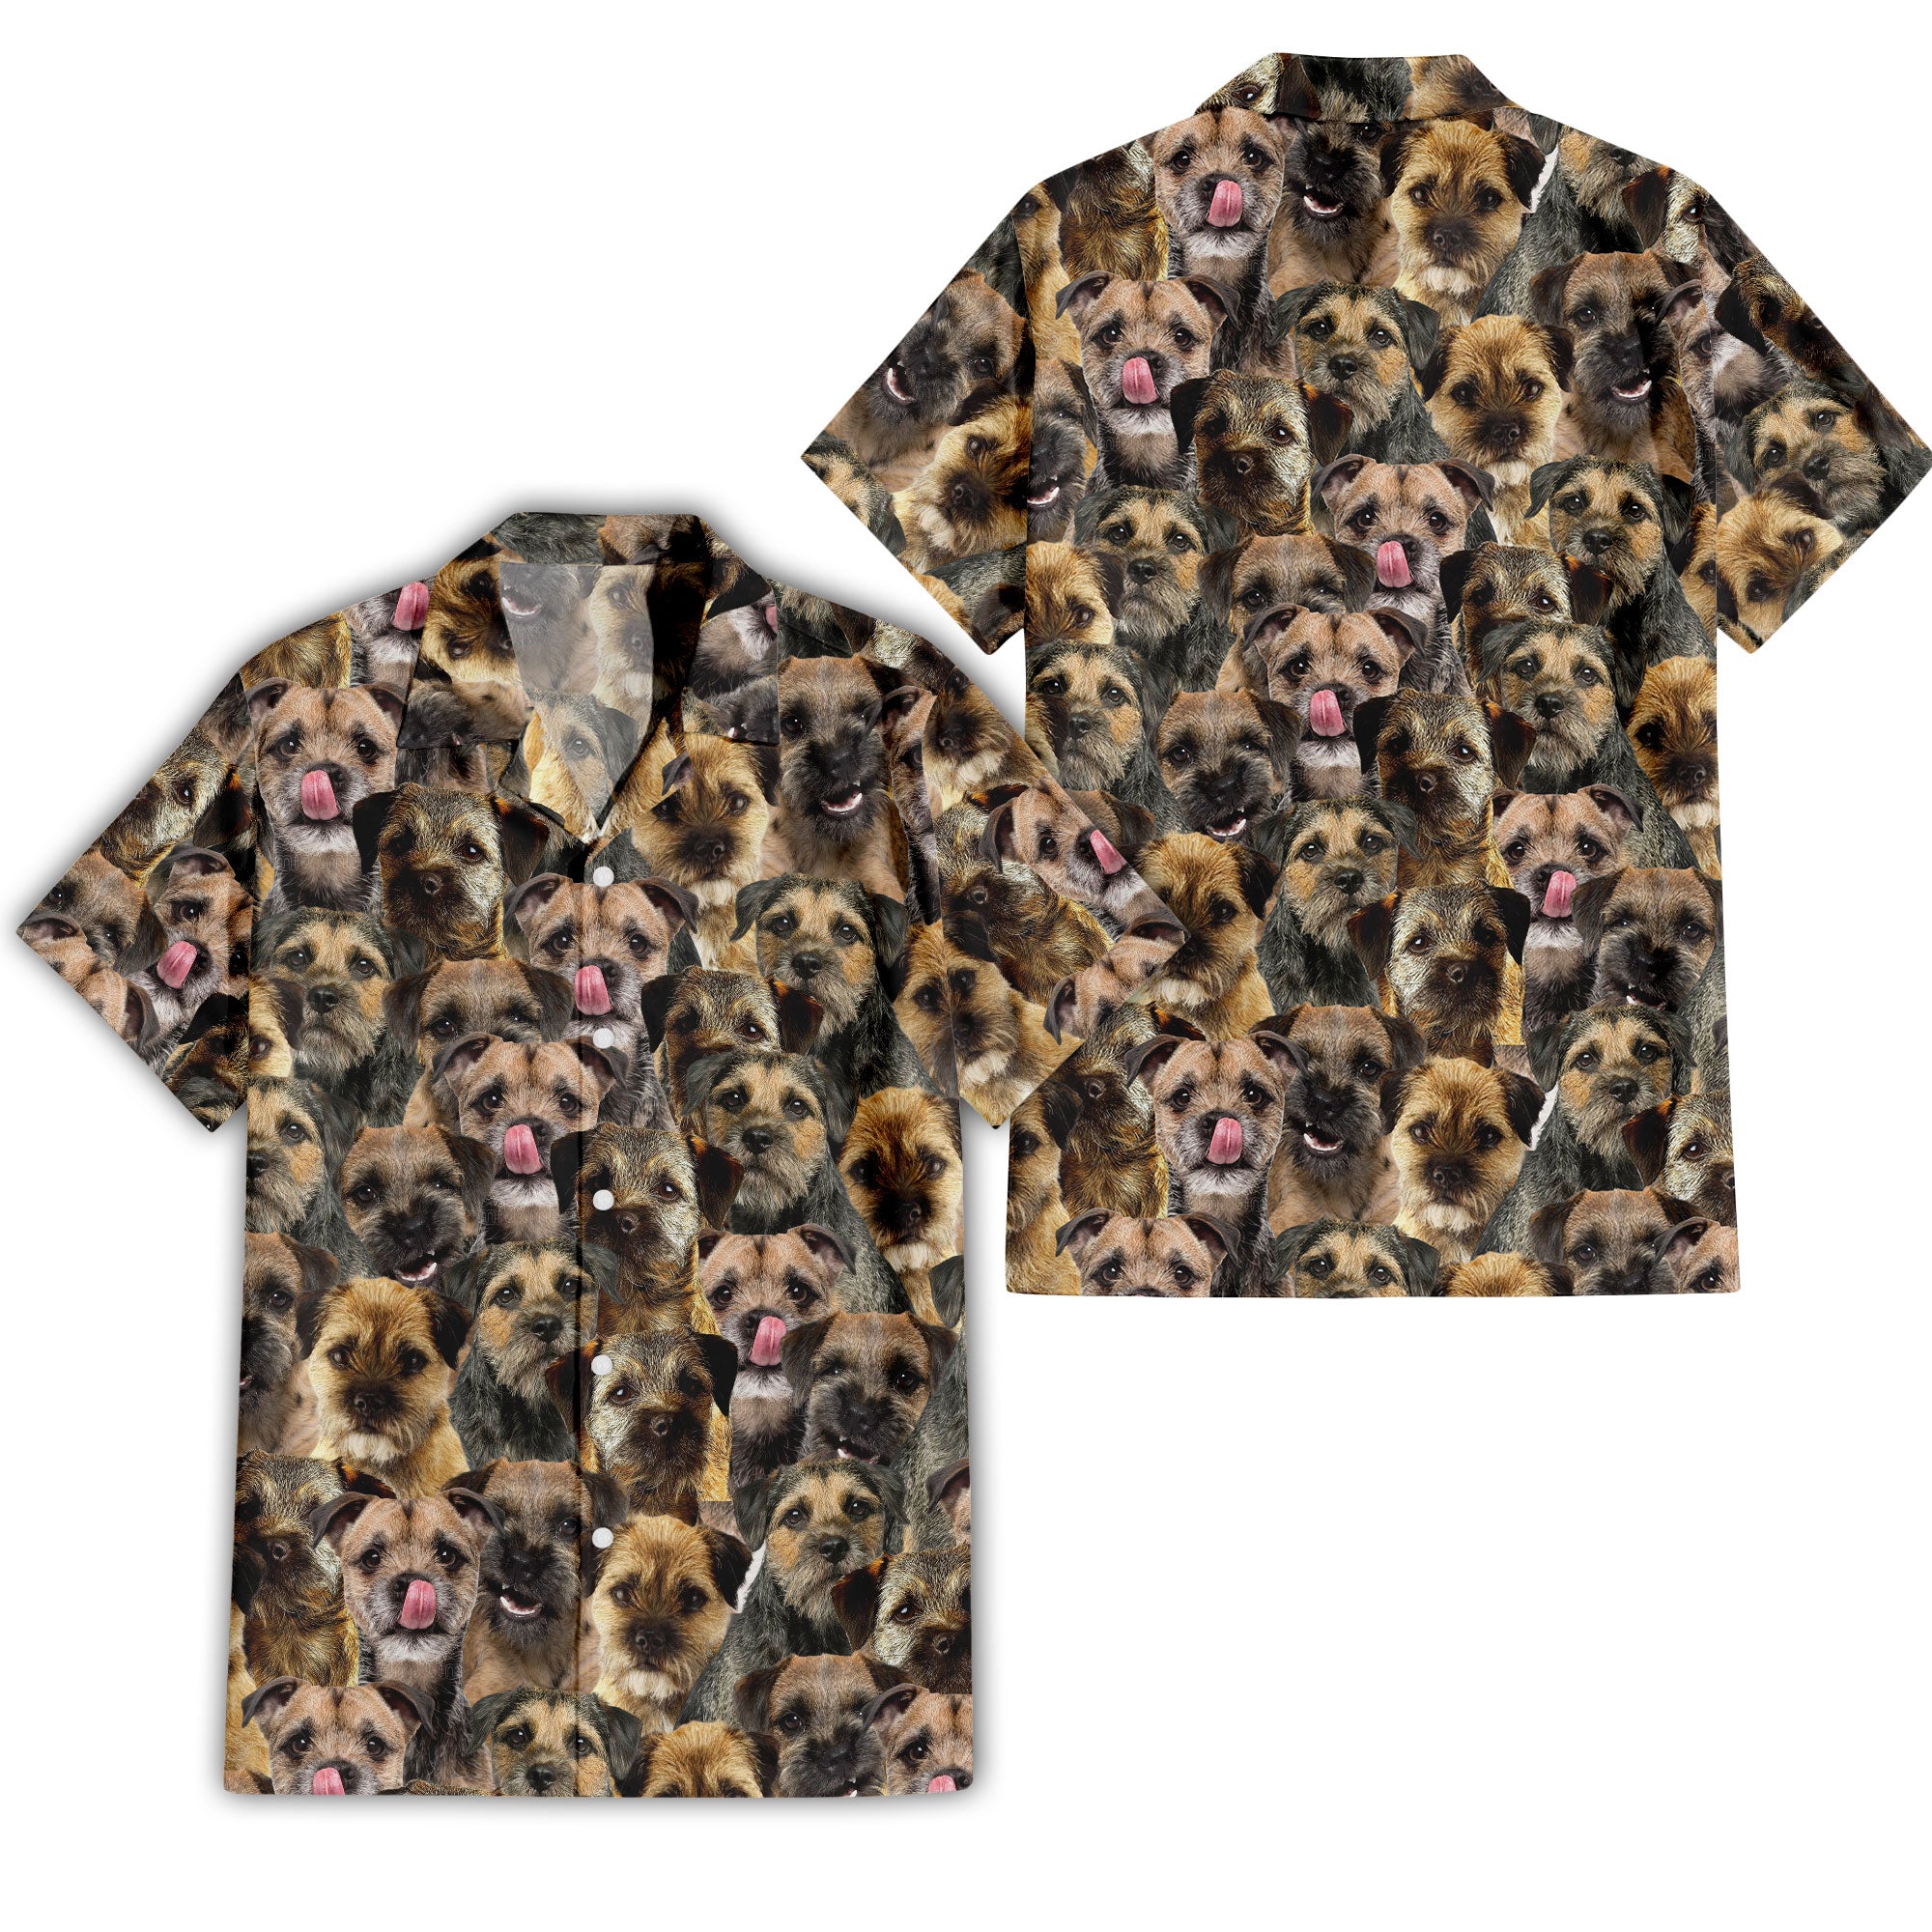 Border Terrier Full Face Hawaiian Shirt & Shorts